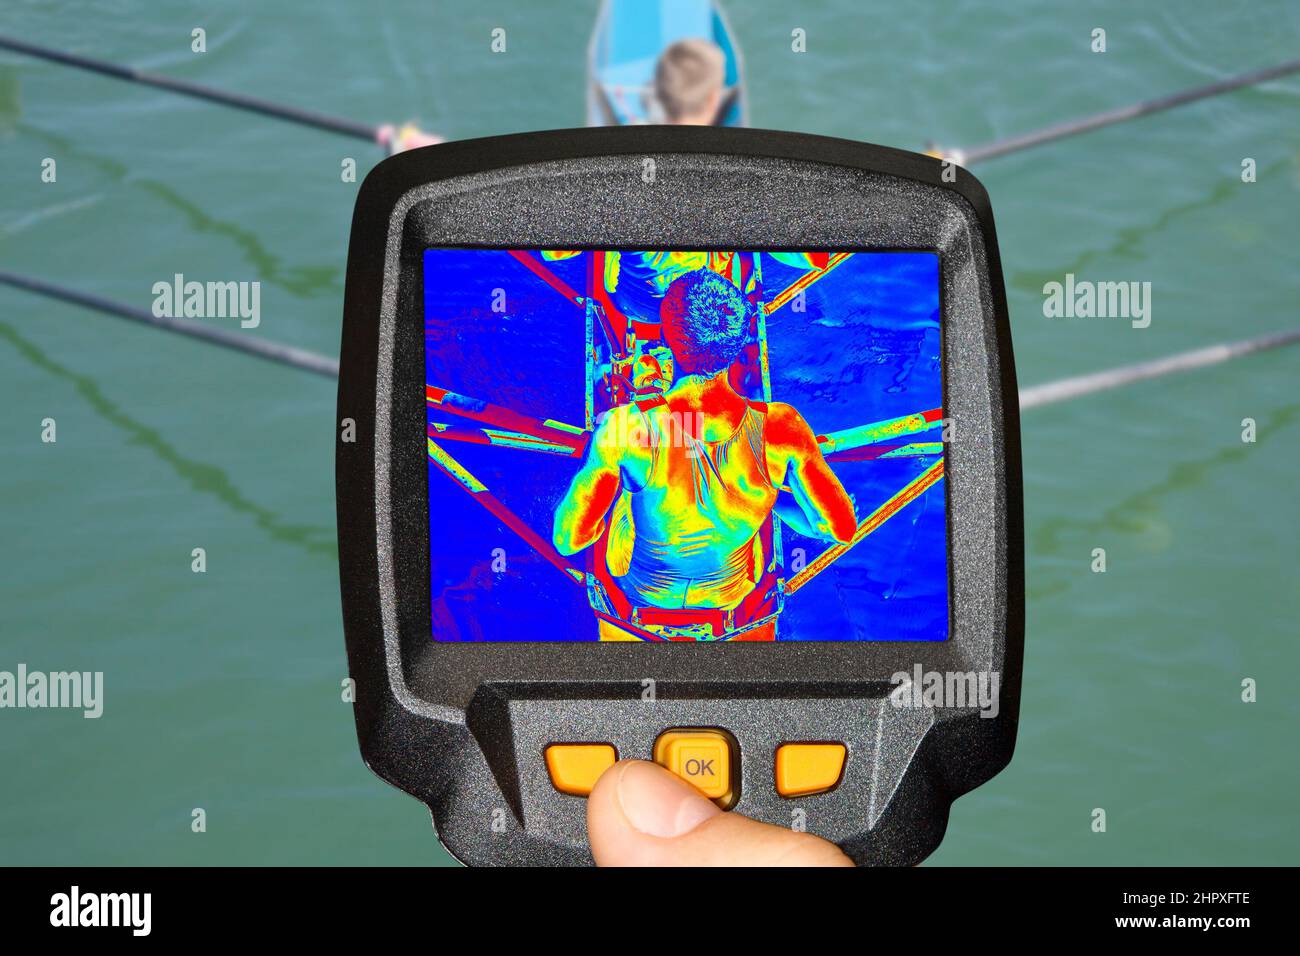 Registrazione di due vogatori in una barca, con termocamera a infrarossi Foto Stock